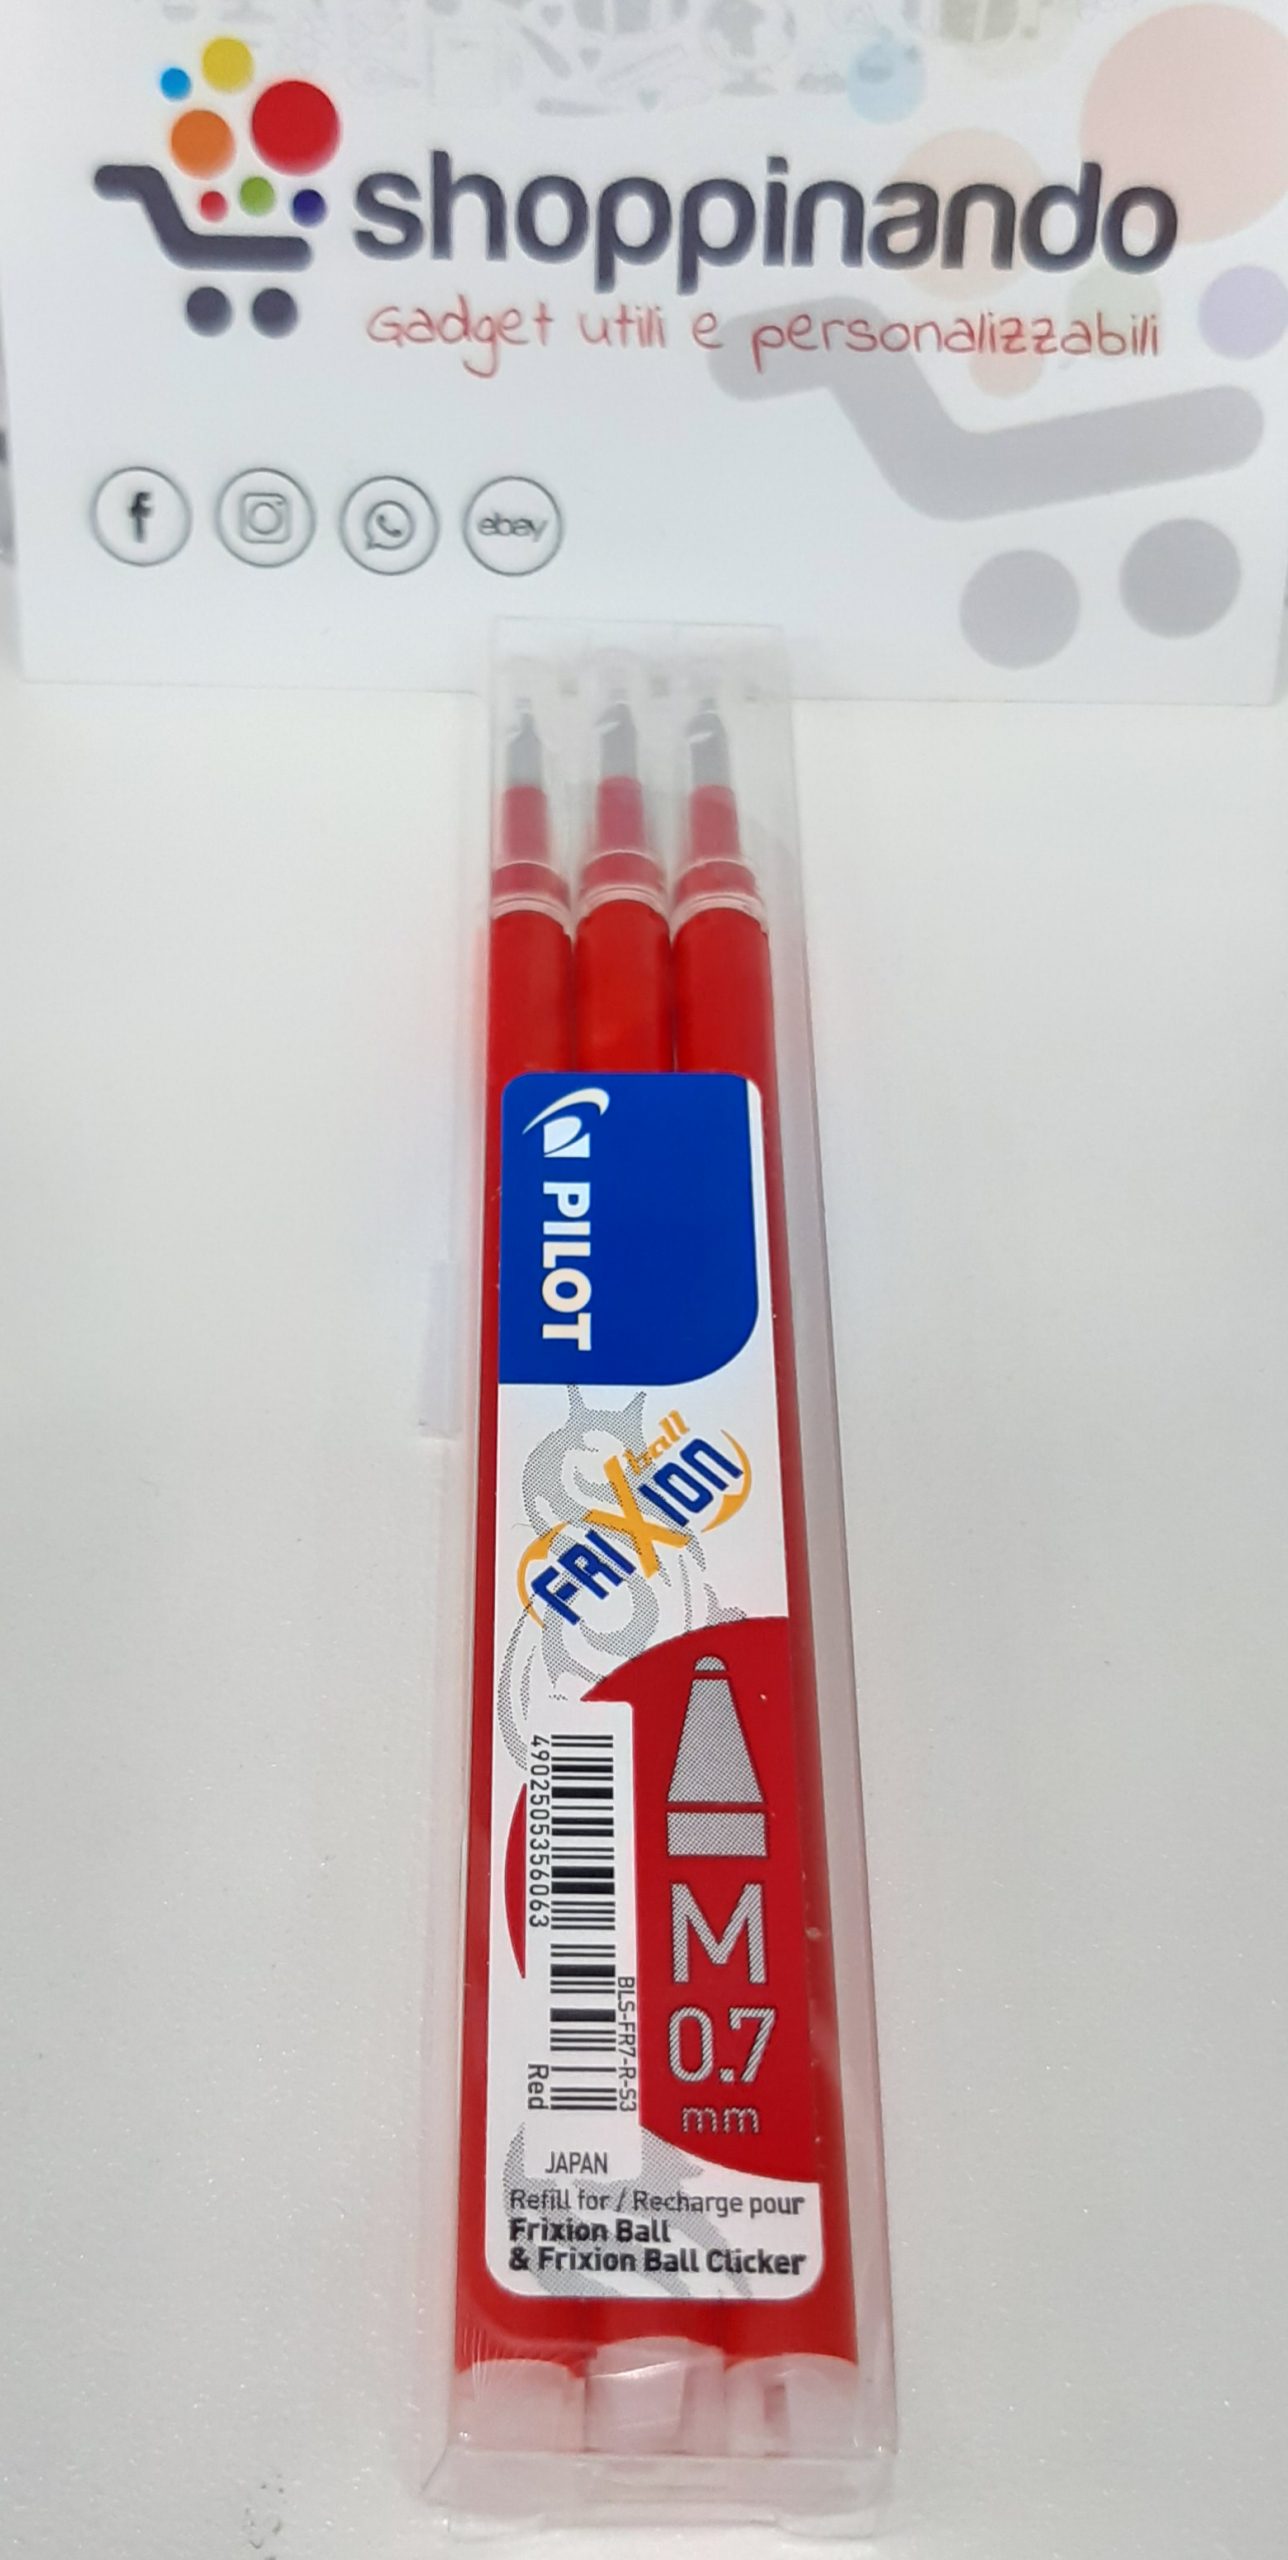 Refill 0.7 penna Pilot FriXion – Shoppinando